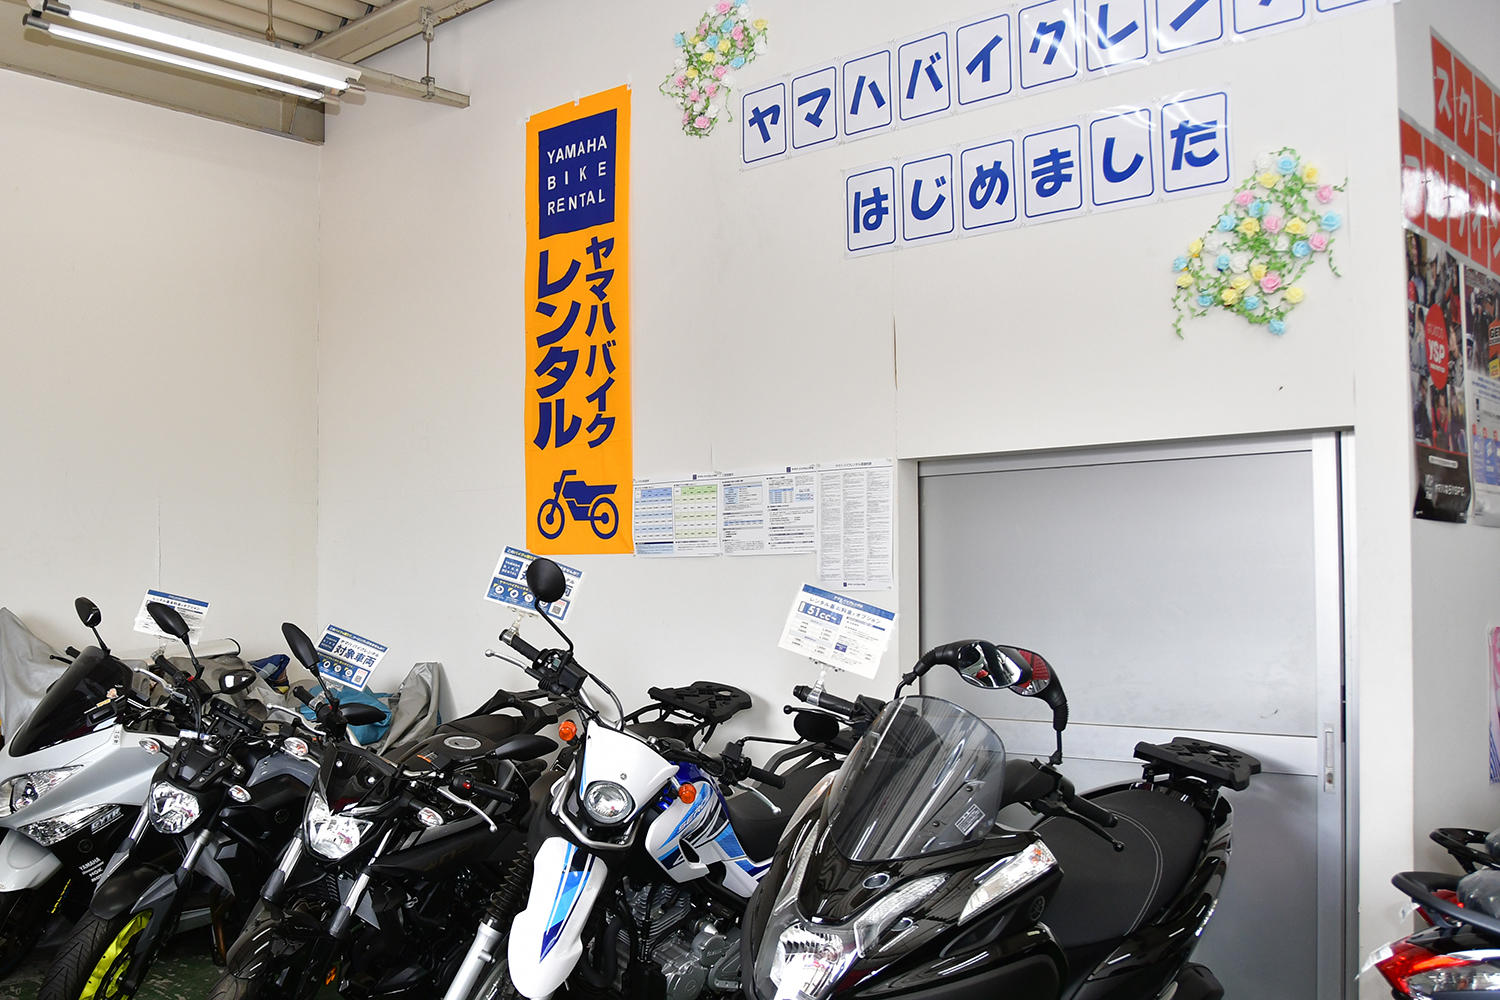 YSP長岡さんの店内には、レンタル車両が並ぶ「レンタルコーナー」が設置されています。